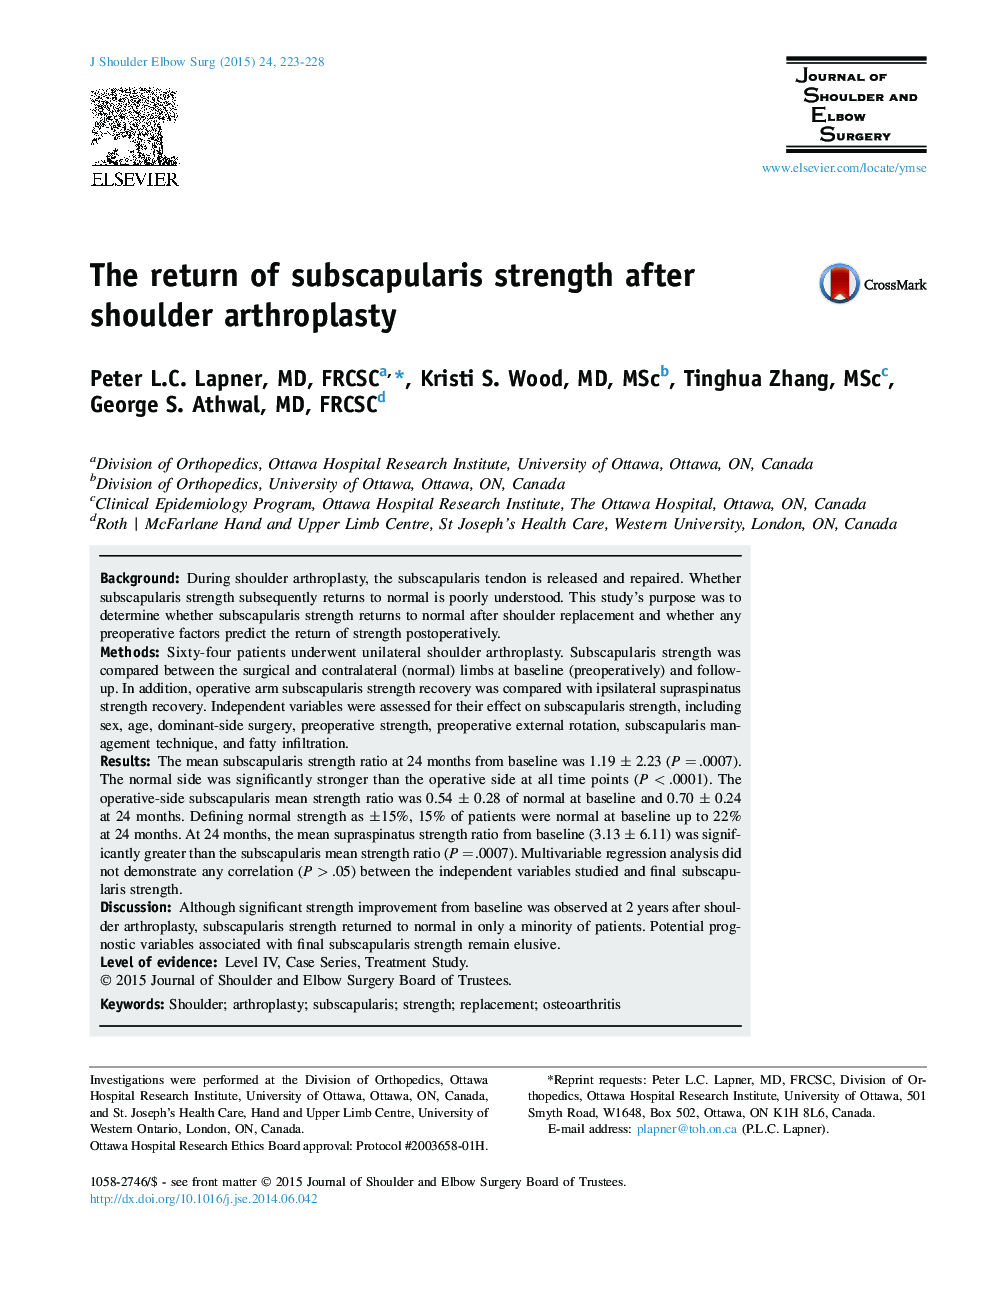 The return of subscapularis strength after shoulder arthroplasty 